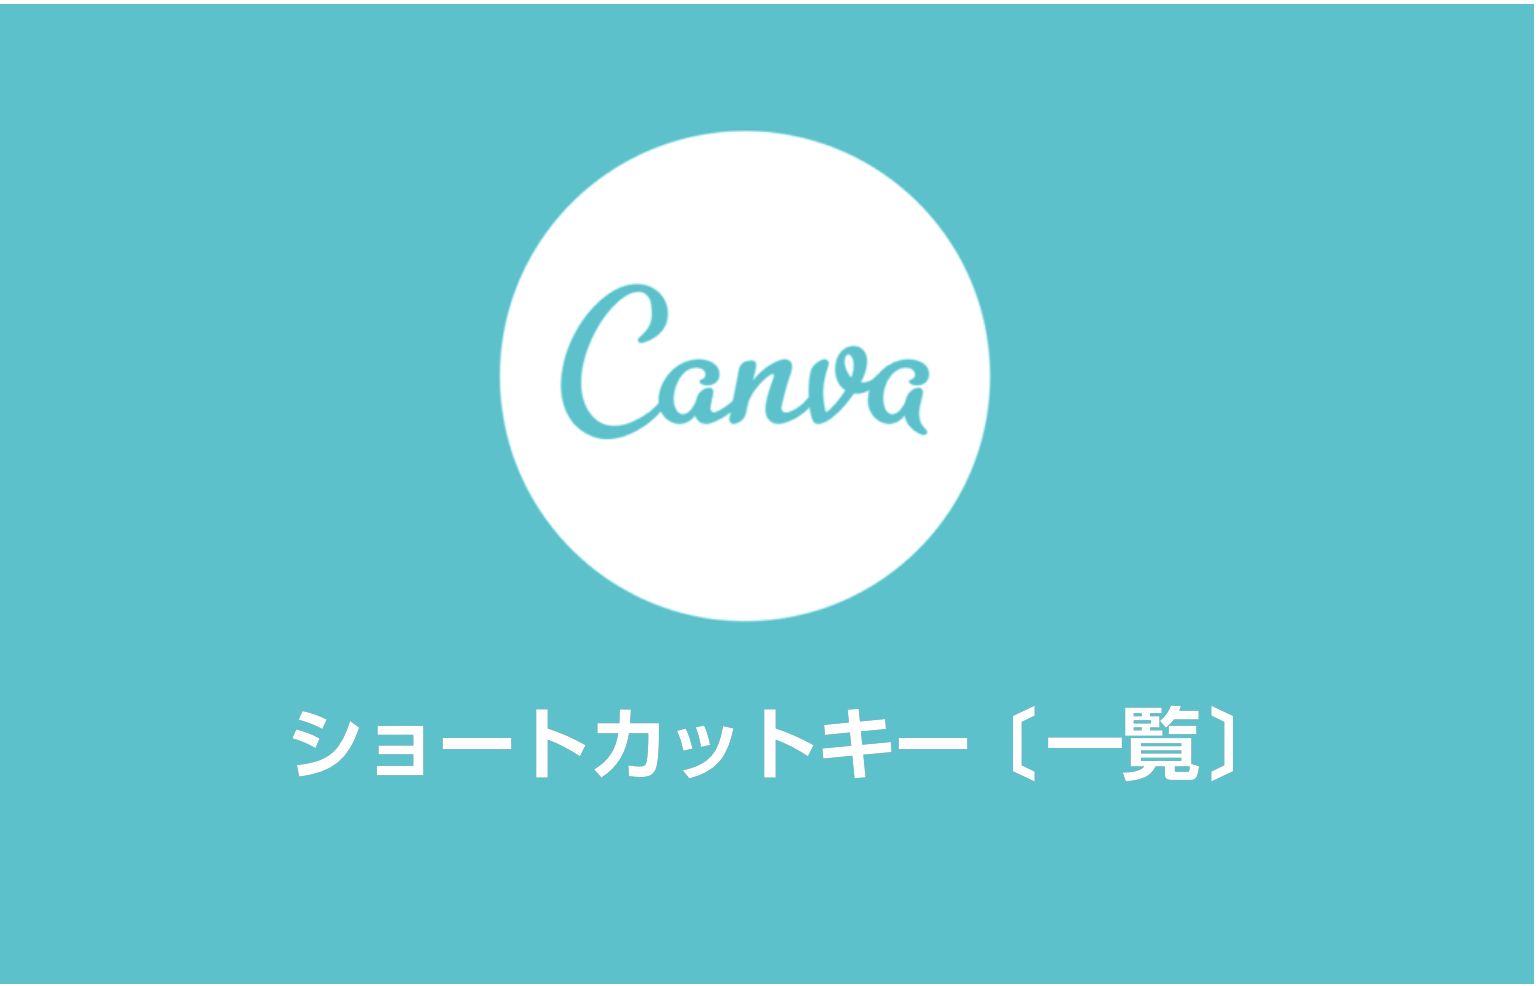 【Canva】ショートカットキー〔一覧〕